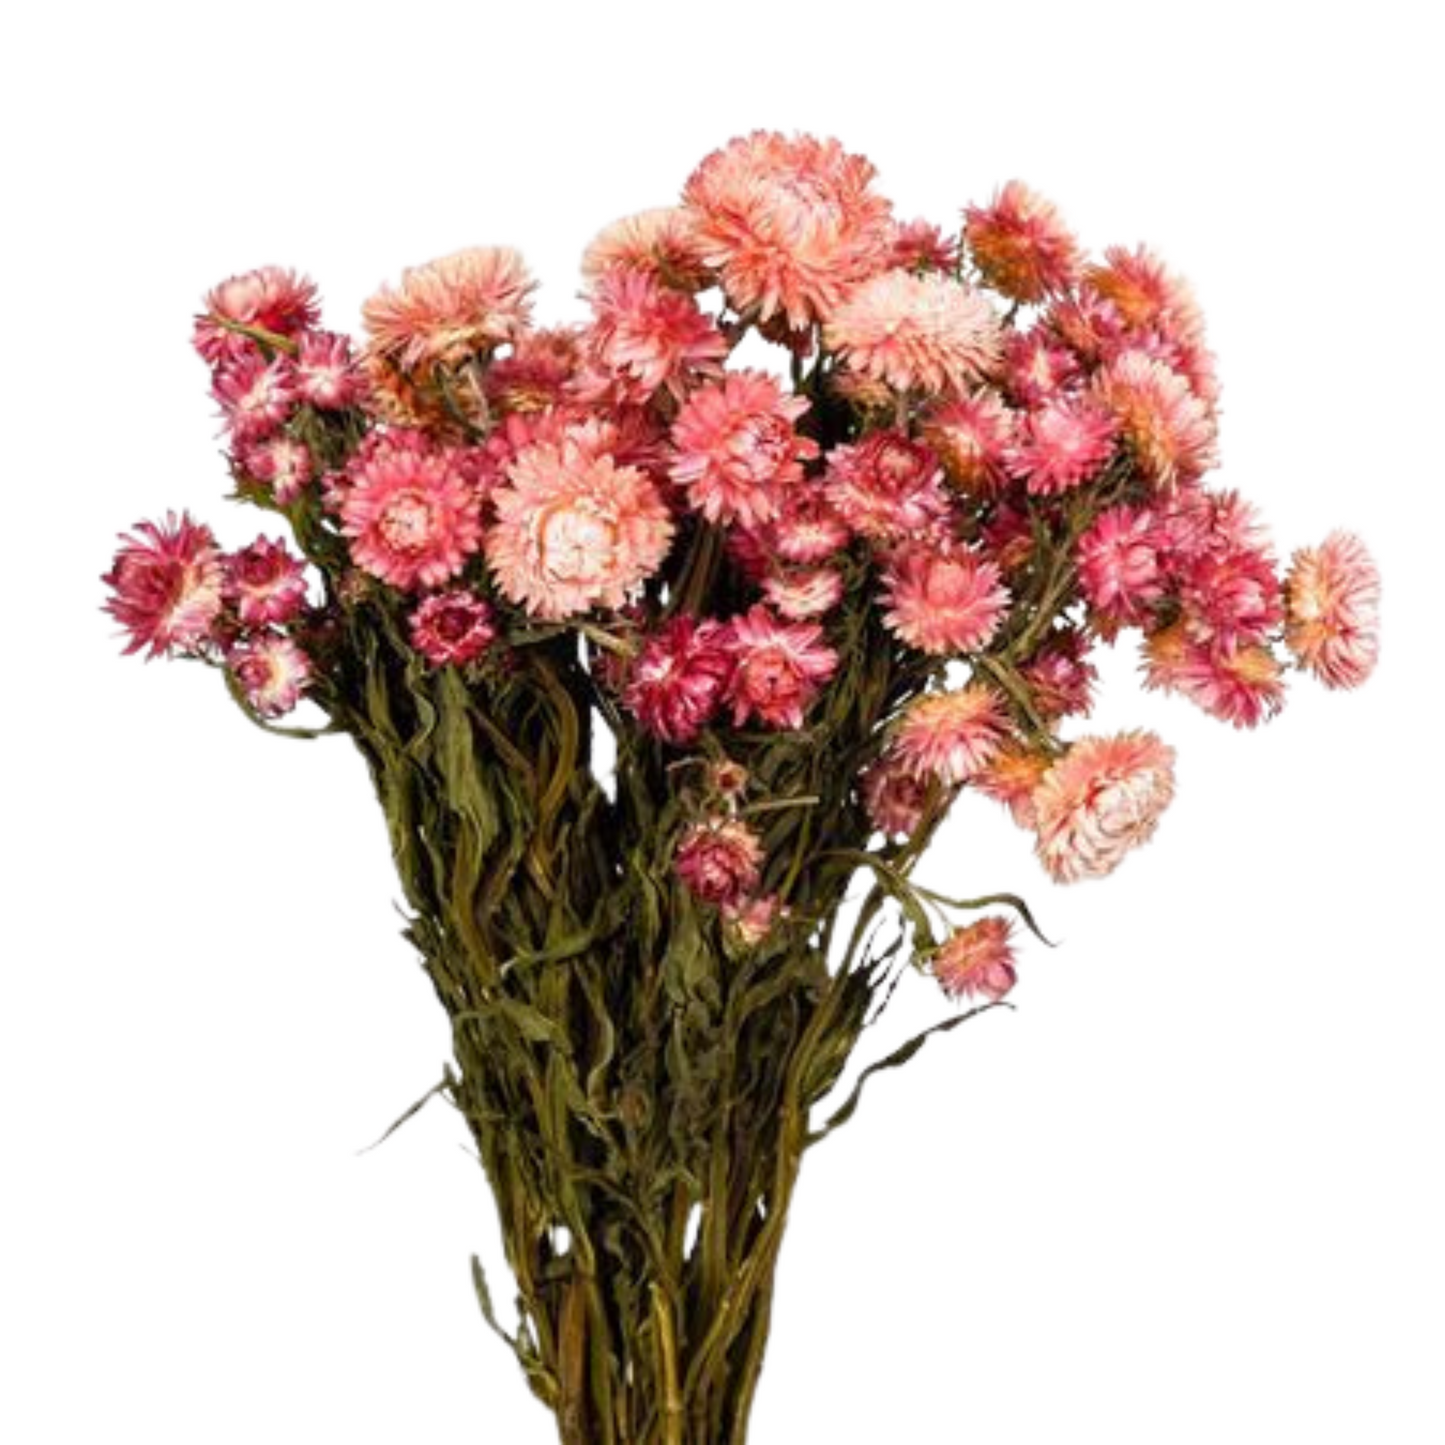 Droogbloemen Helichrysum roze